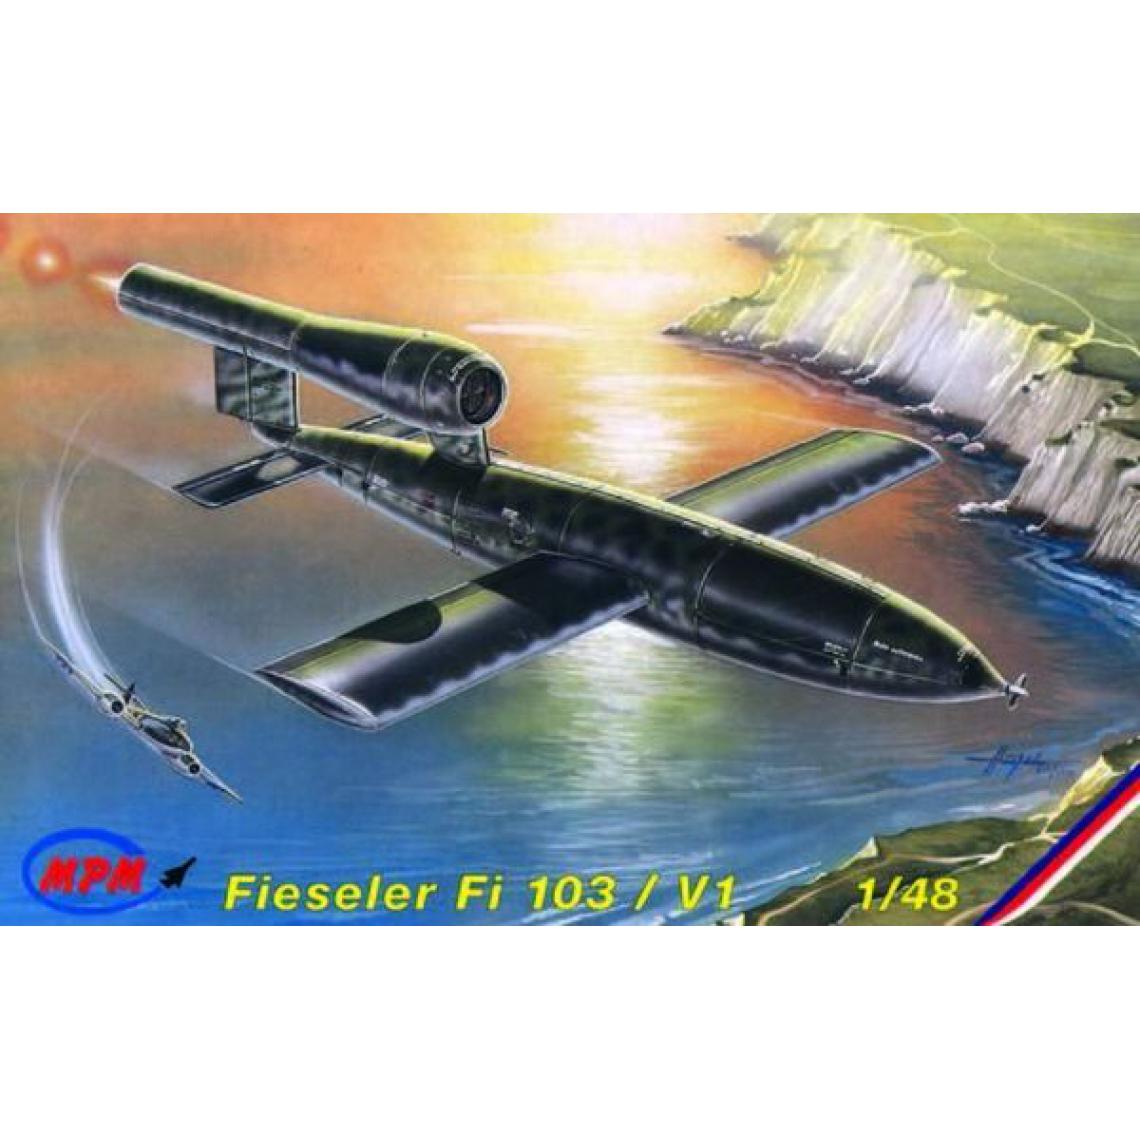 Mpm - Fieseler Fi-103 V-1 / FZG-76 - 1:48e - MPM - Accessoires et pièces